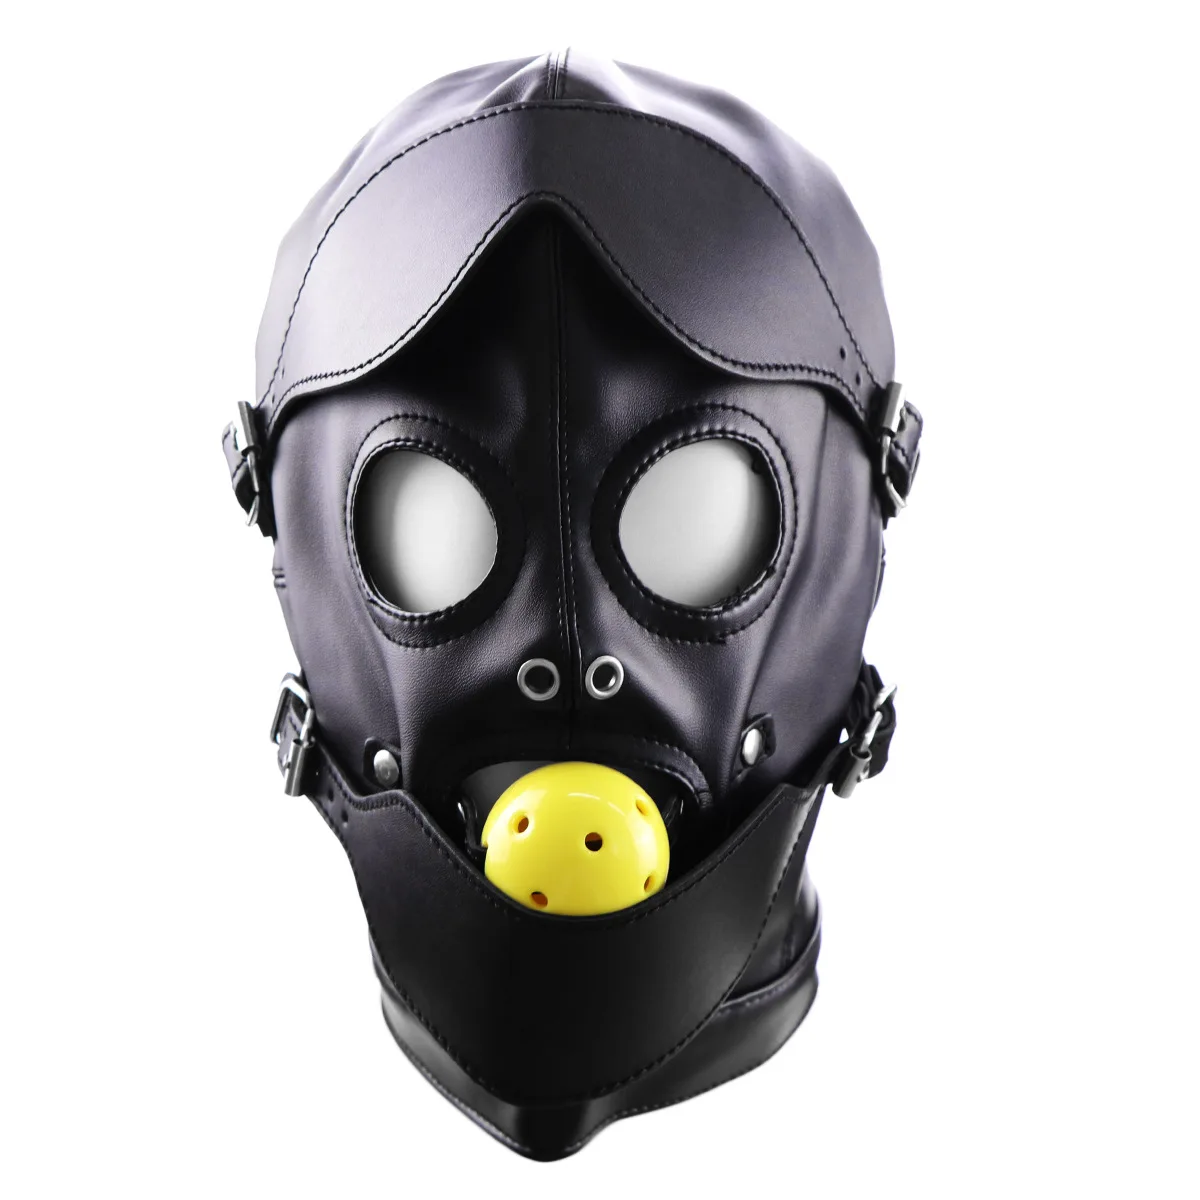 

Эротическая маска для косплея Фетиш бондаж головной убор с шариком для рта кляп БДСМ горячий эротический кожаный капюшон для мужчин взрослые игры секс-маска